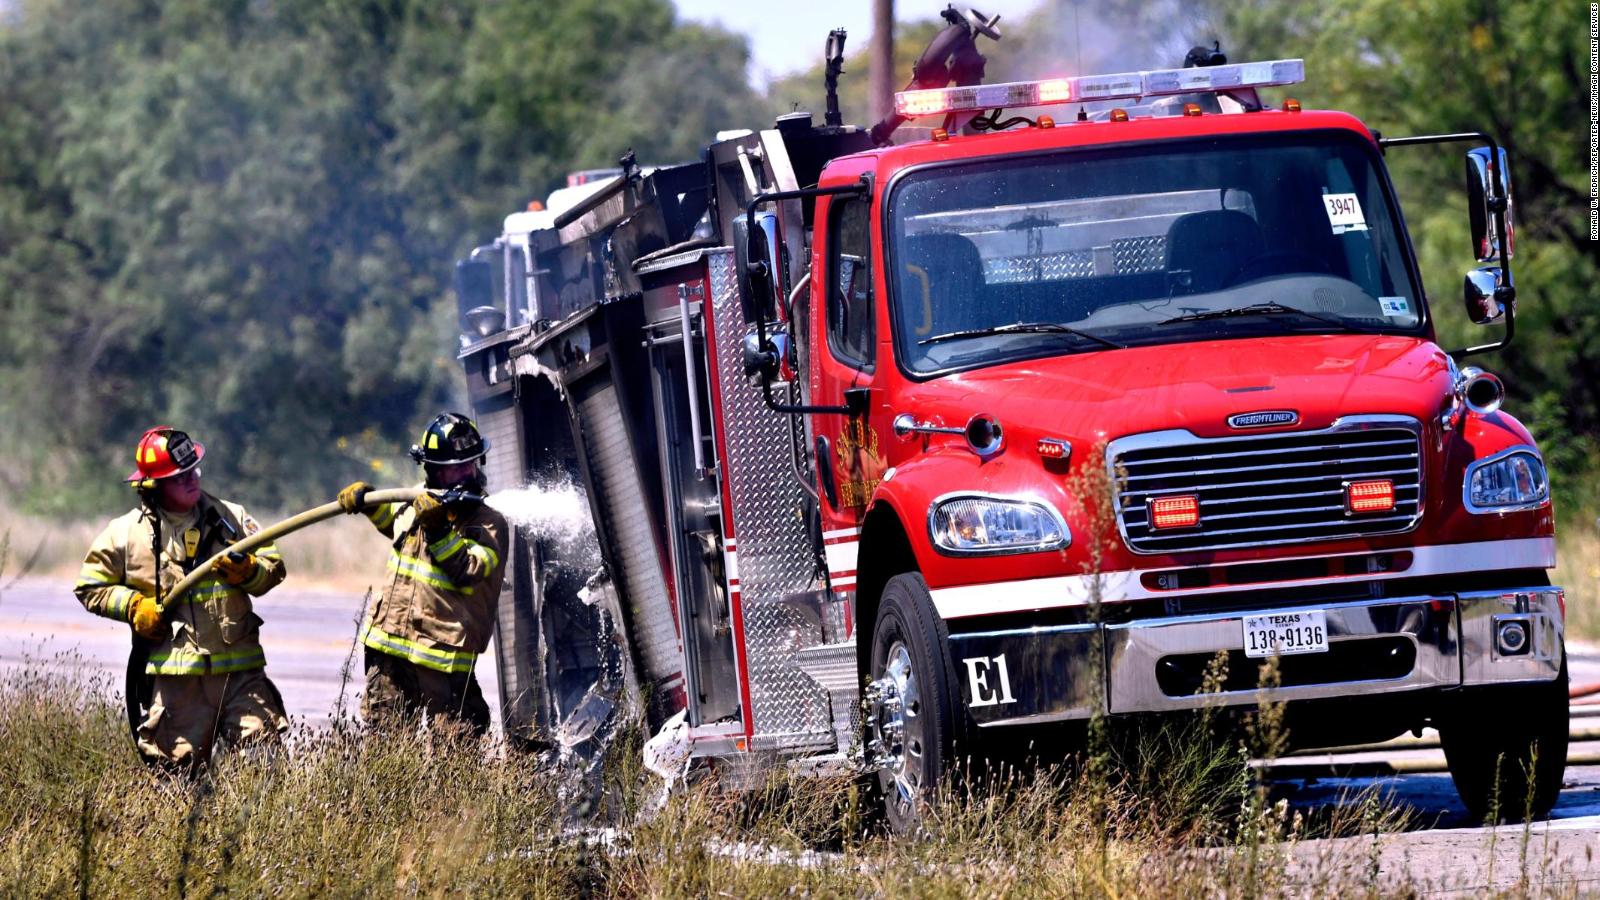 A firetruck caught on fire in Texas CNN